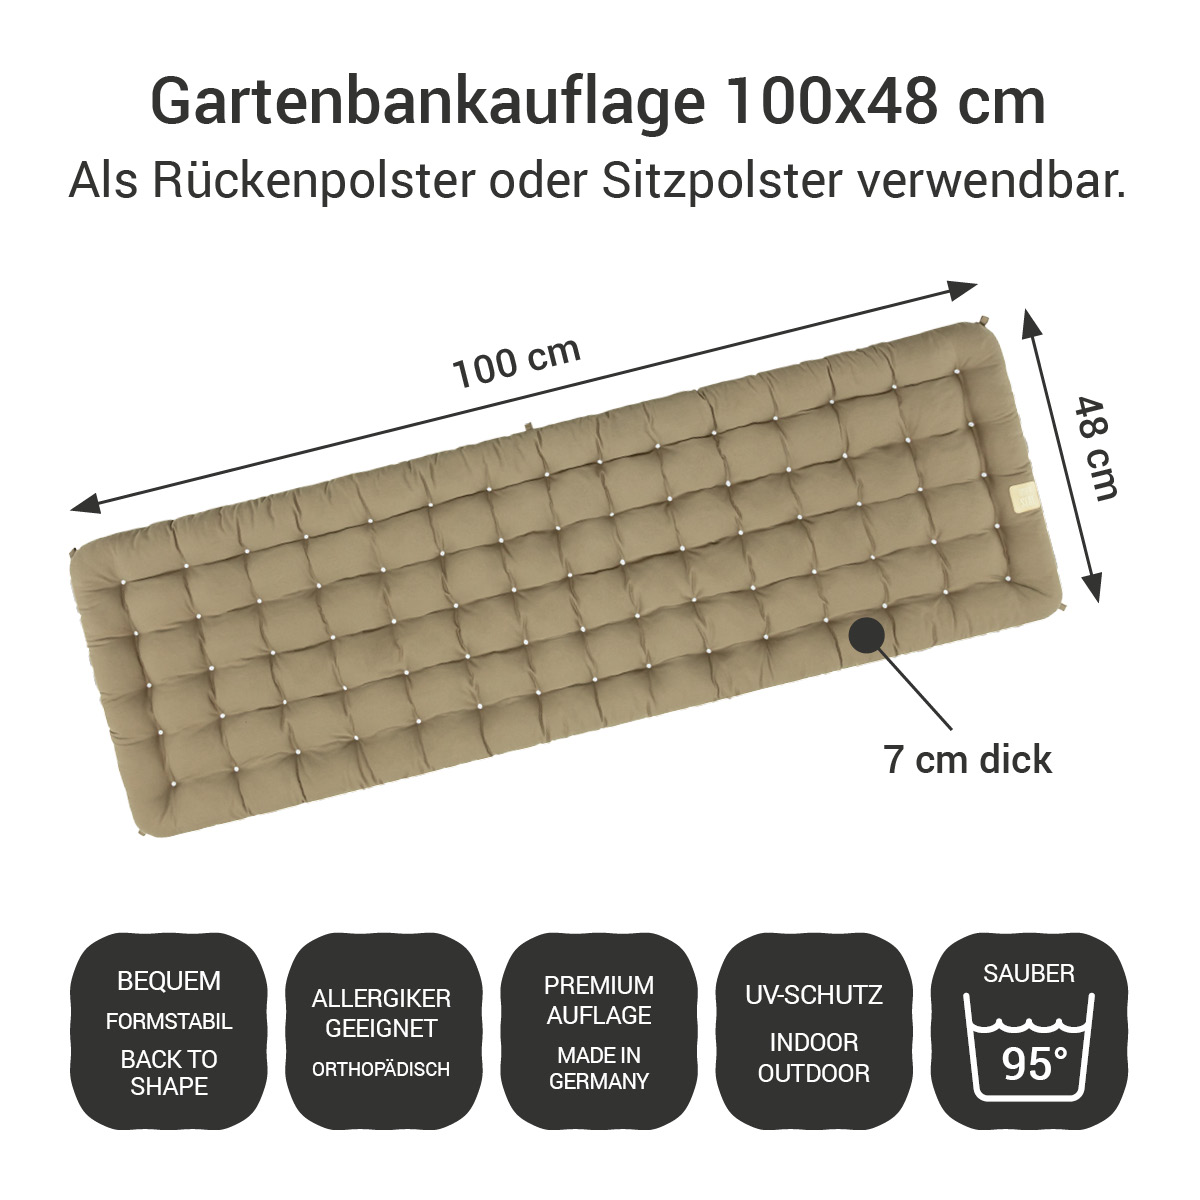 Gartenbank Auflage goldbraun 100x48 cm / 100 x 50 cm | bequem & orthopädisch, komplett im Ganzen waschbar bis 95°C, wetterfest, Made in Germany